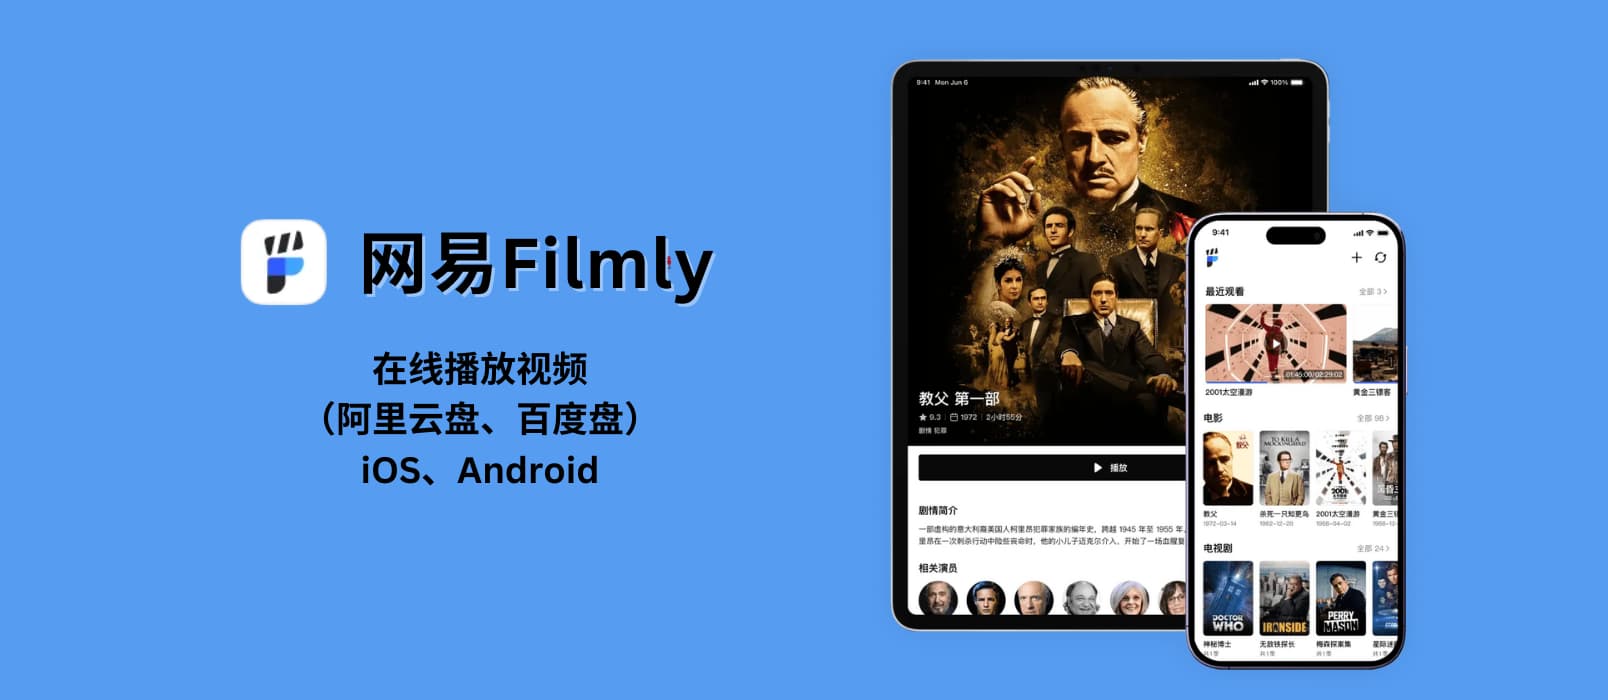 网易Filmly – 网易发布 iOS、Android 个人媒体库，可在线播放视频（阿里云盘、百度盘），支持刮削、海报墙